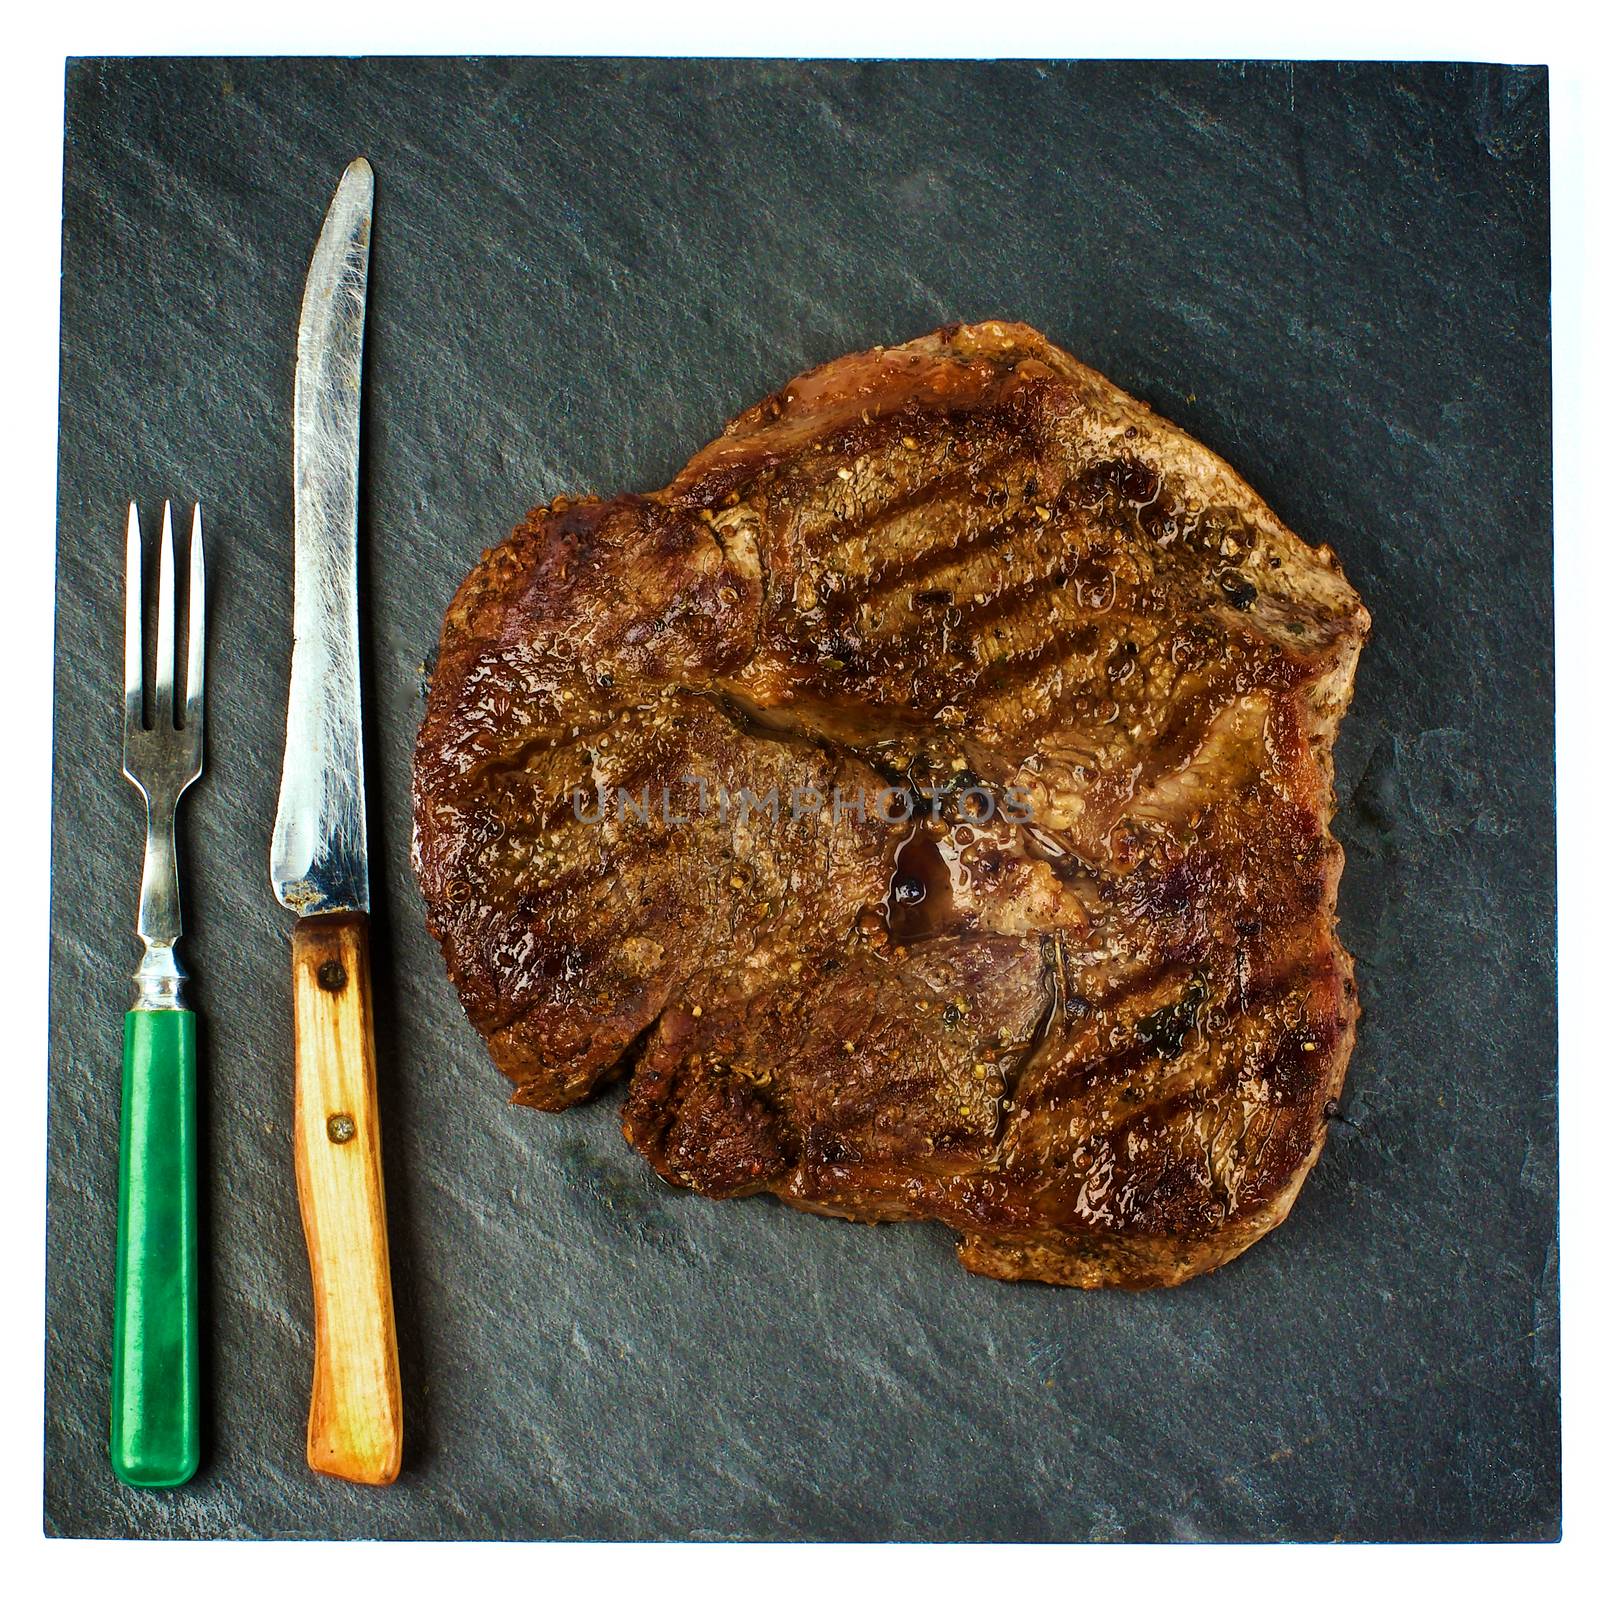 Steak Beef Shank by zhekos